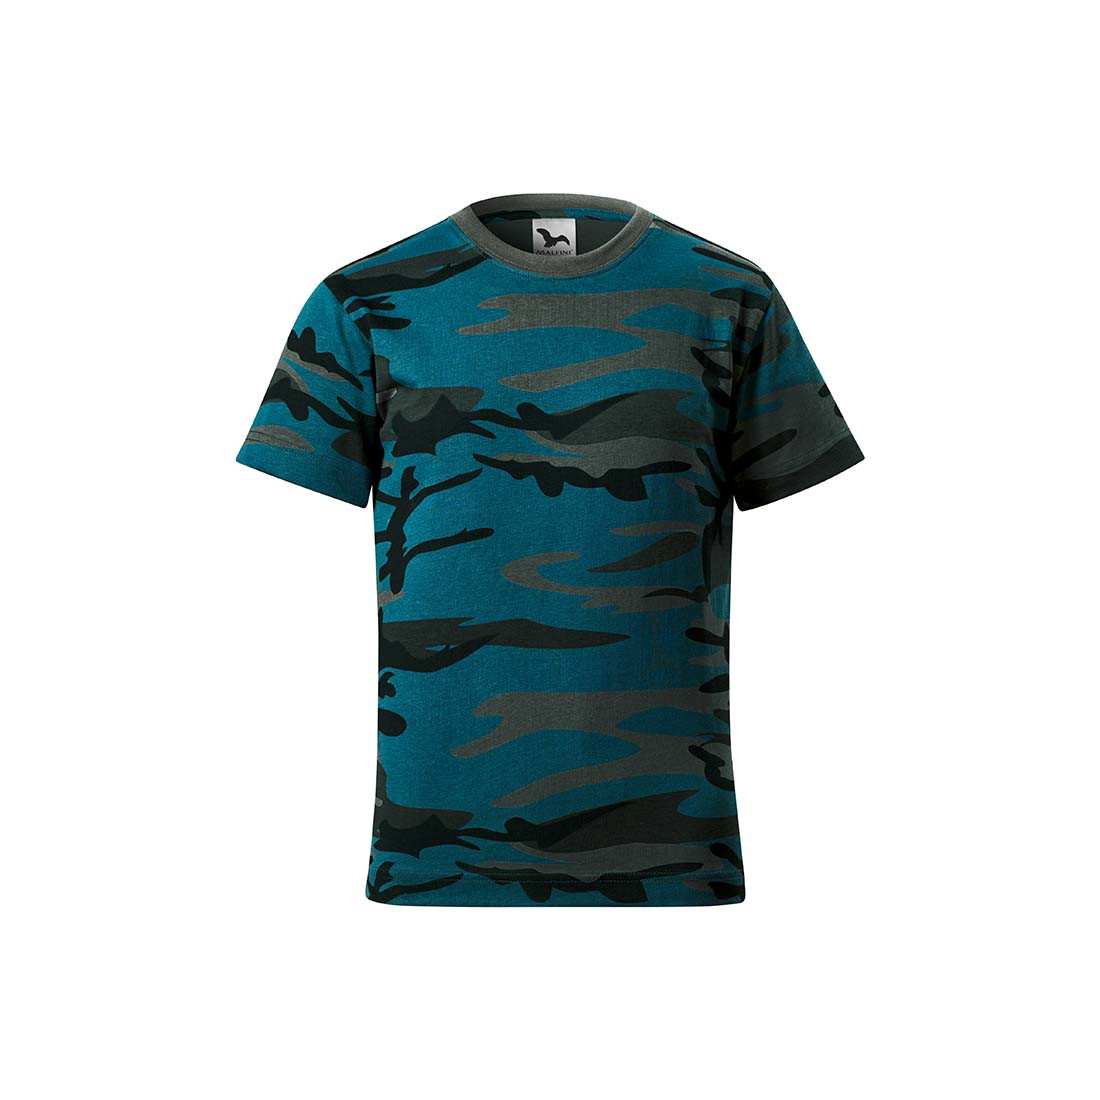 Kids Camouflage T-shirt - Safetywear